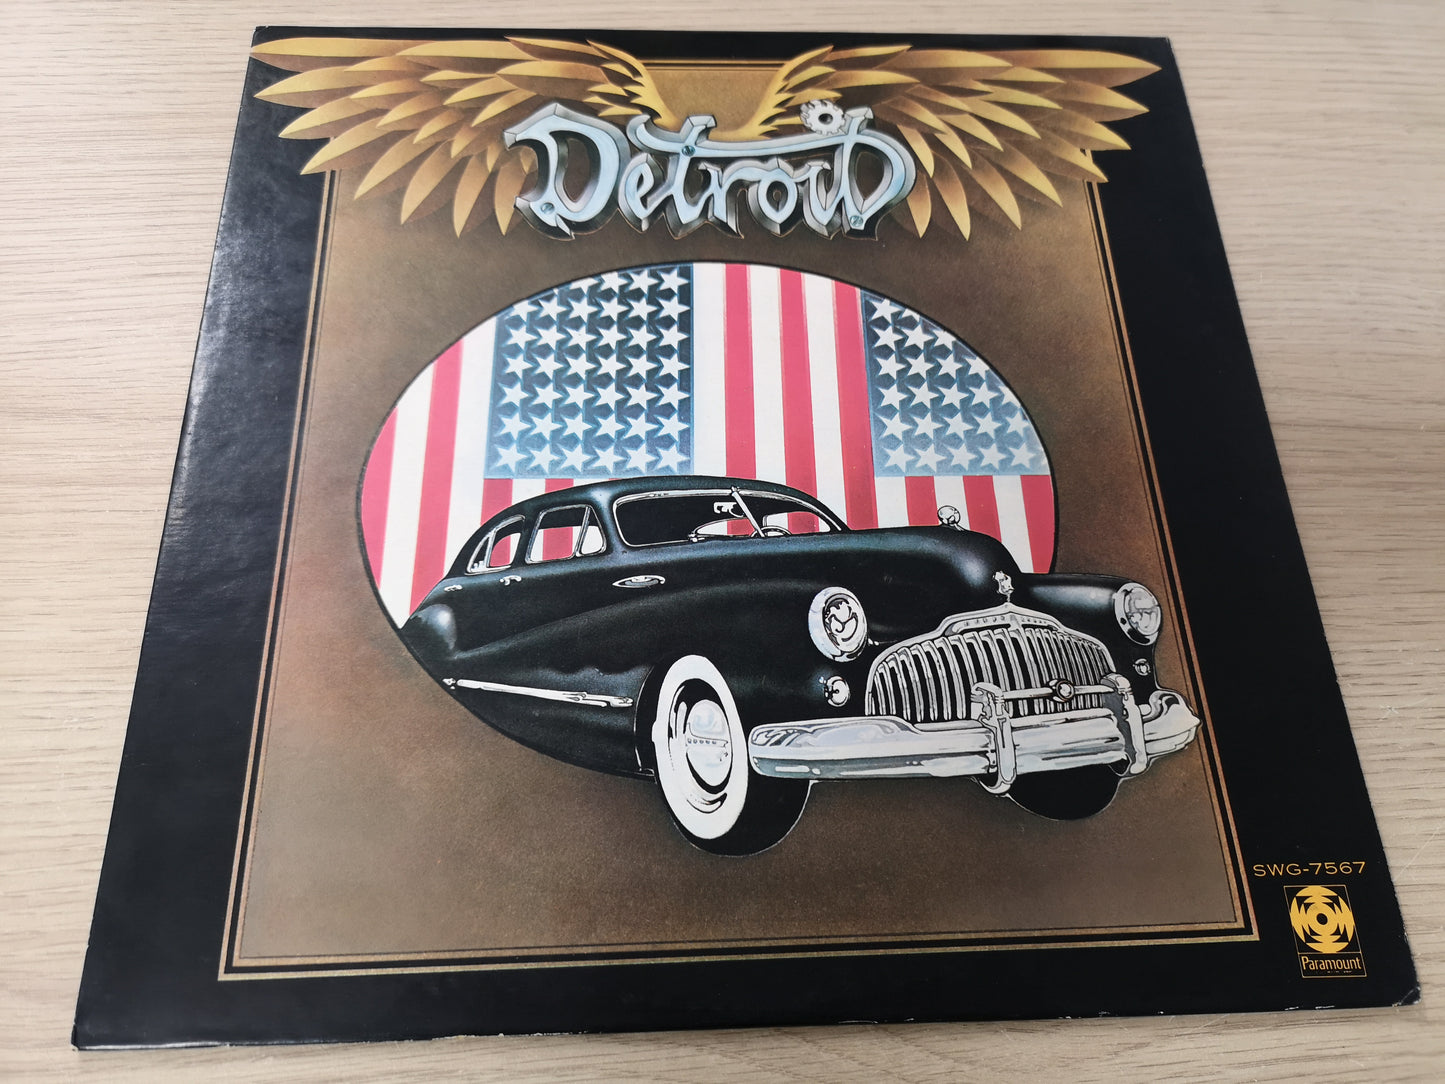 Detroit "With Mitch Ryder" Orig Japan 1972 EX/EX (w/ Insert)